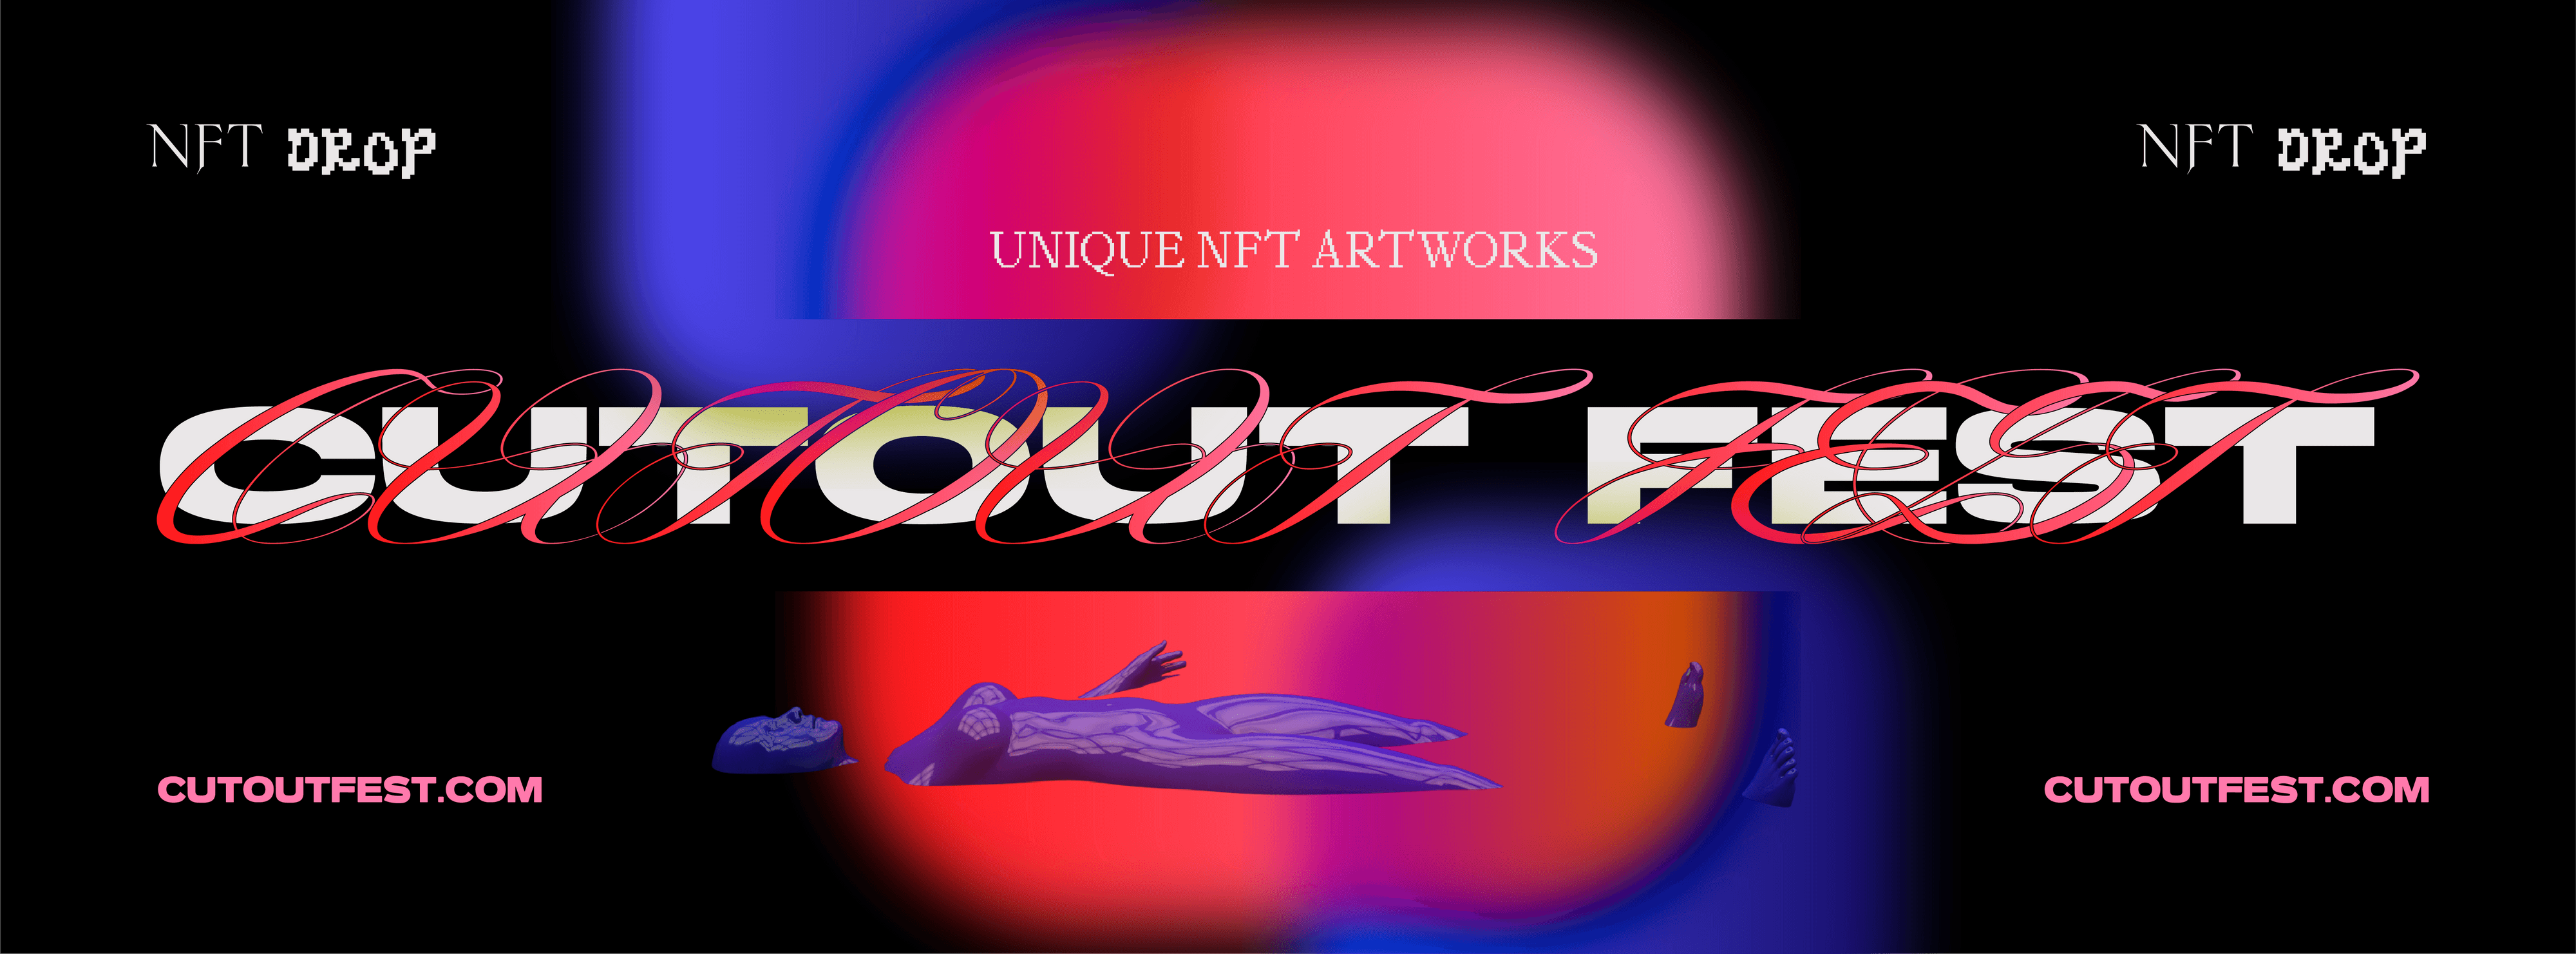 CutOutFest banner